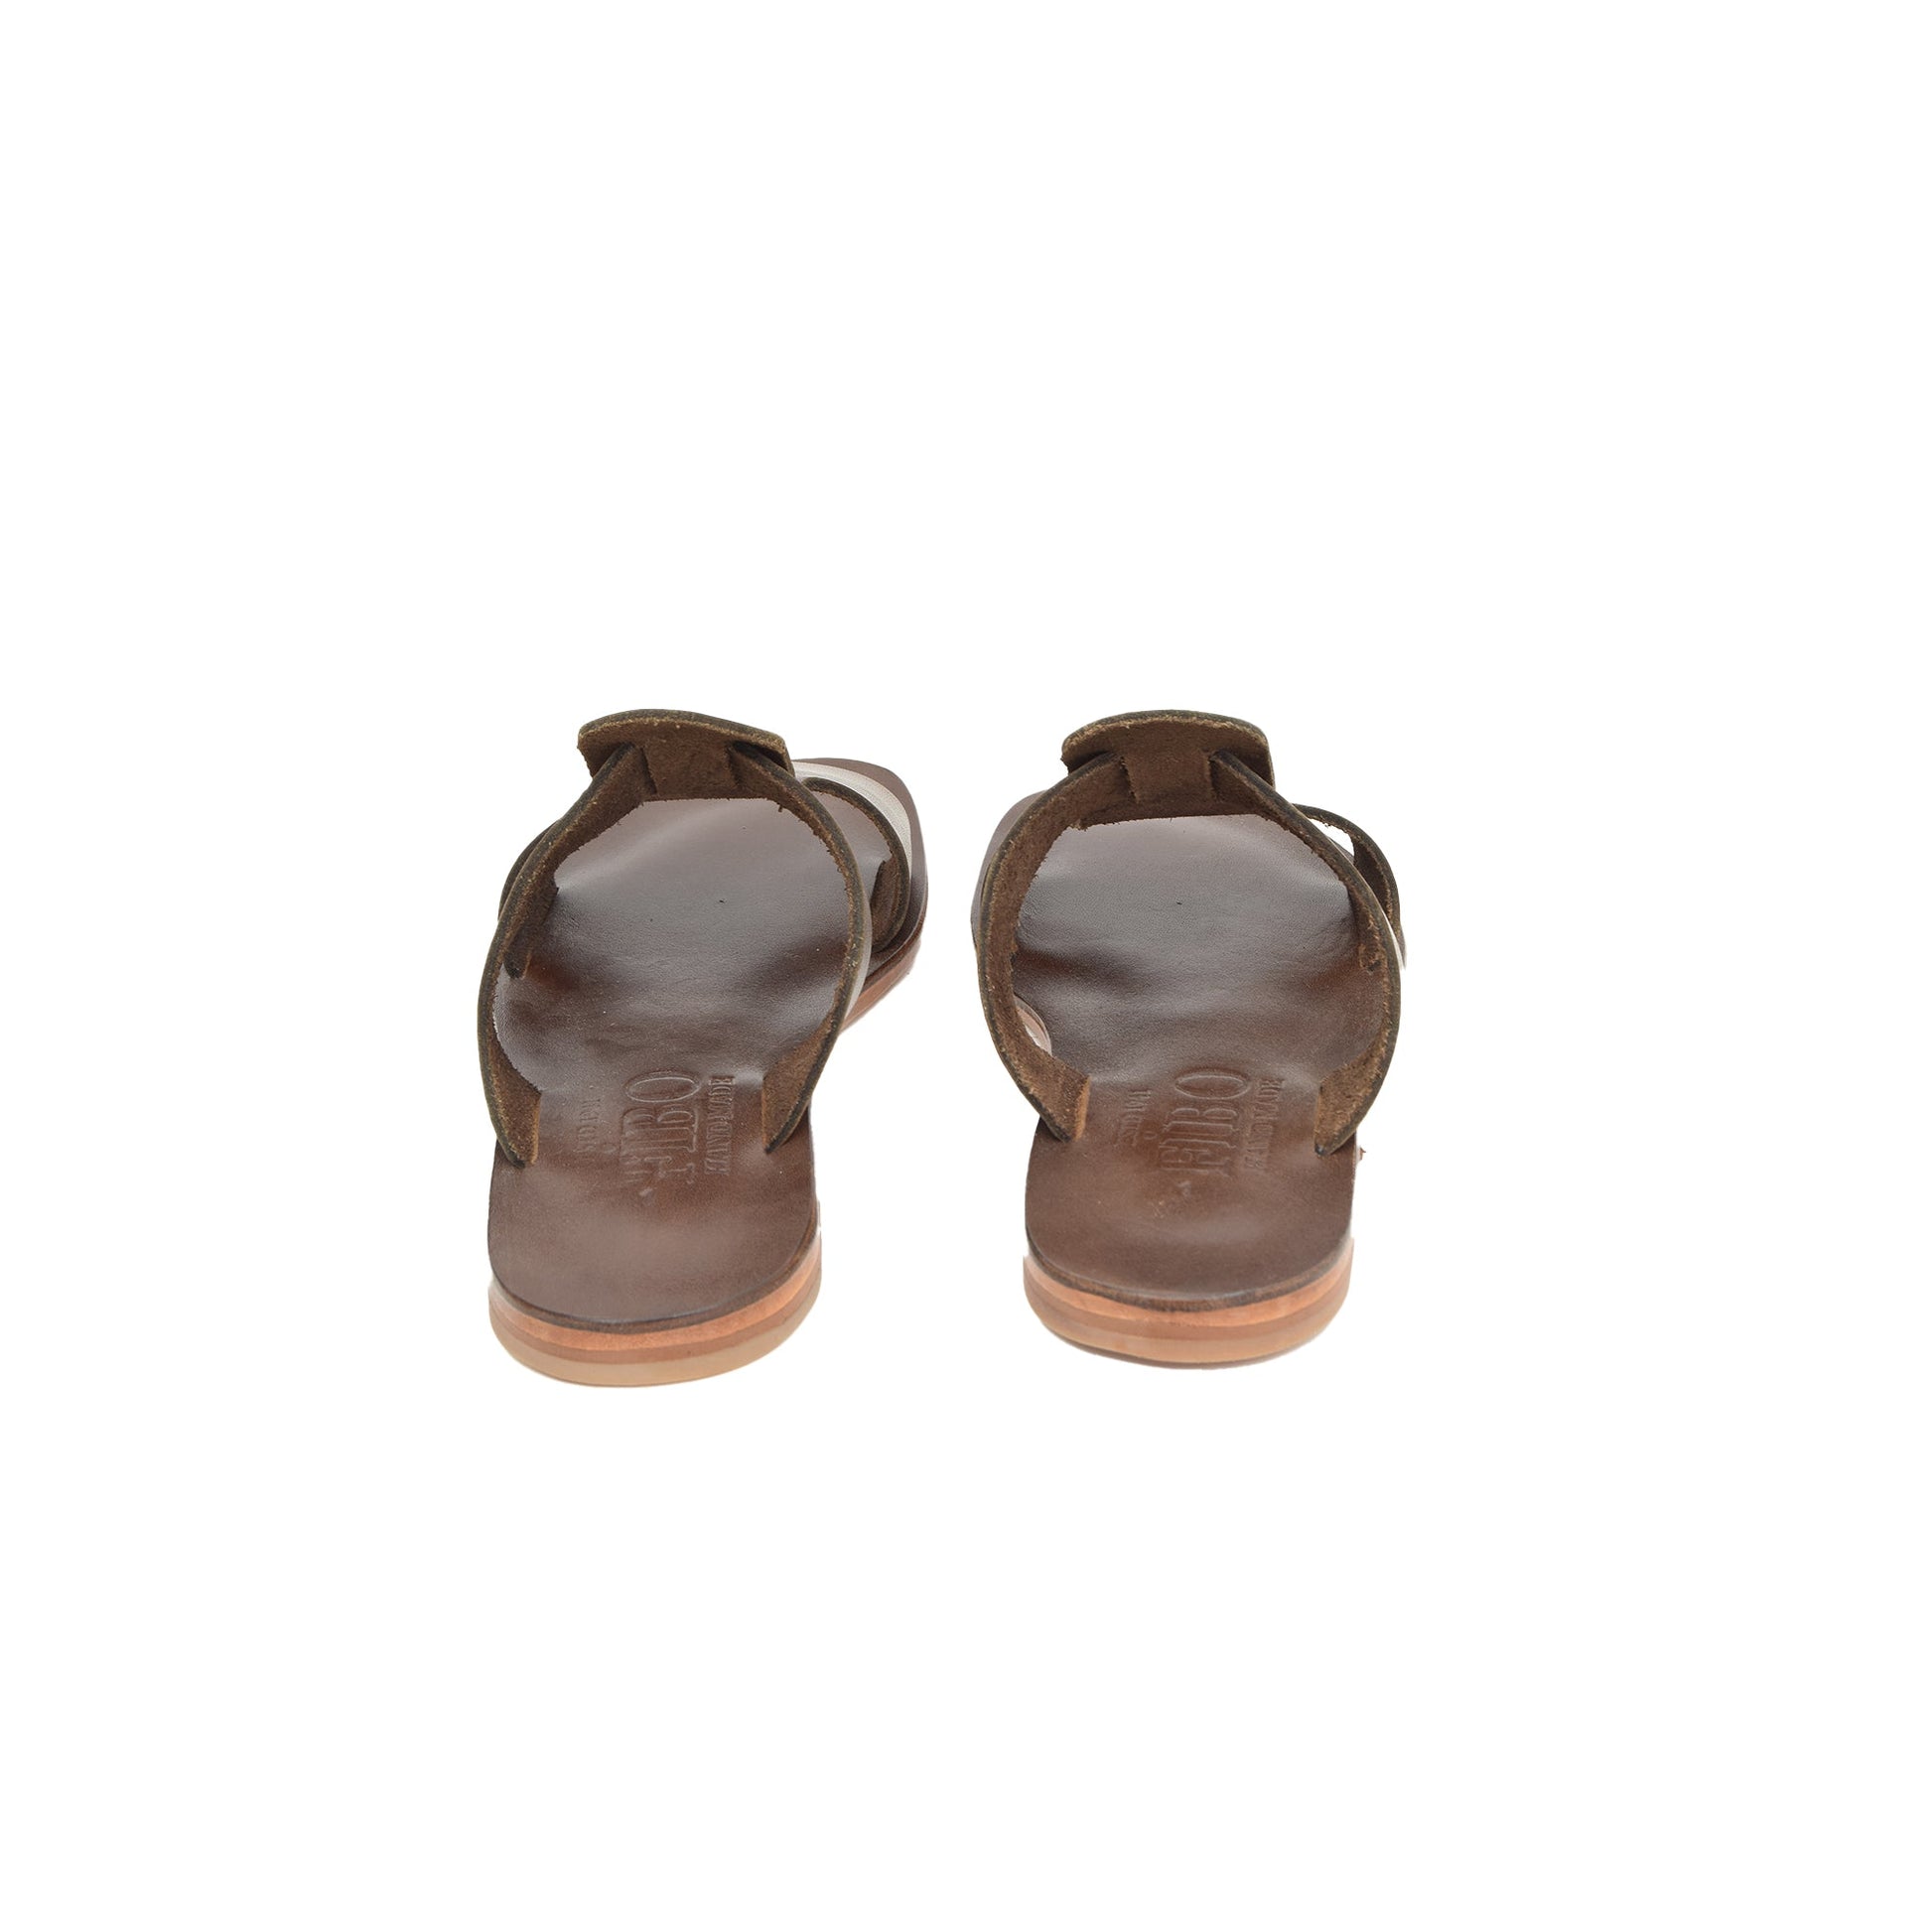 James Dark Brown Leather Men’s Slippers - Men Zengoda Shop online from Artisan Brands